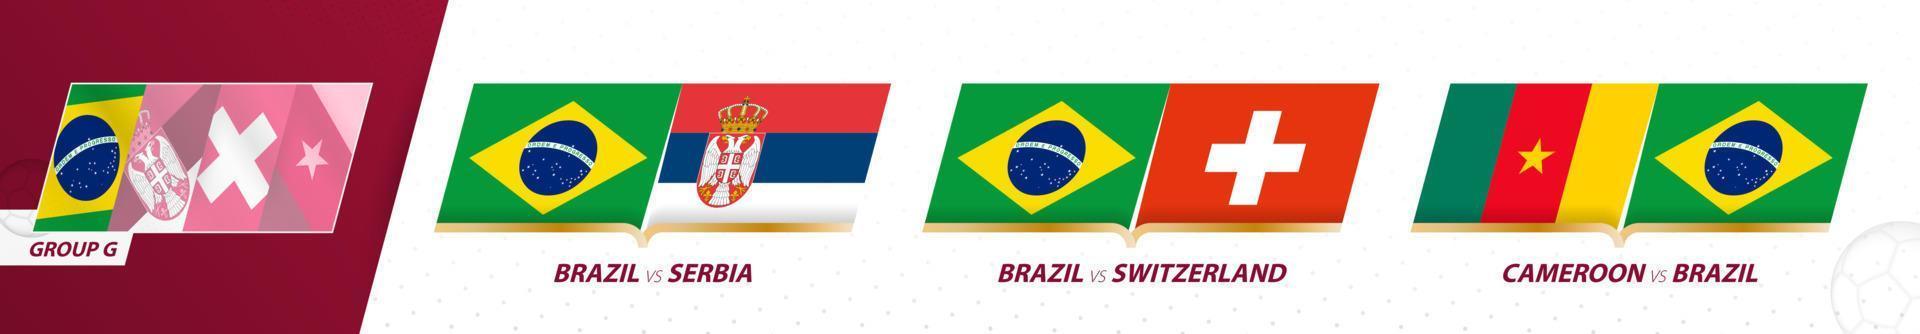 matchs de l'équipe de football du brésil dans le groupe g du tournoi international de football 2022. vecteur